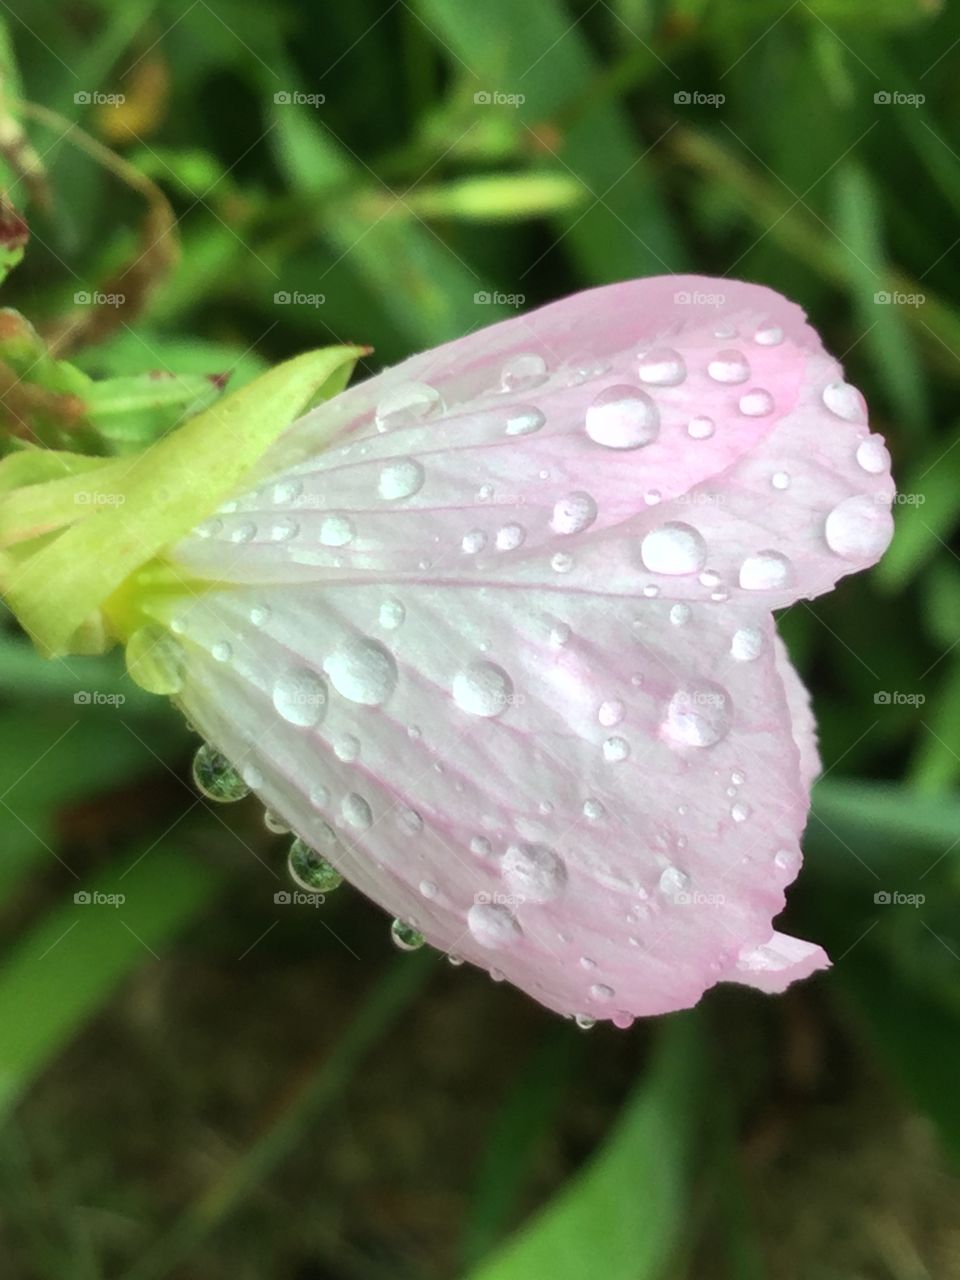 Raindrops on Flower2